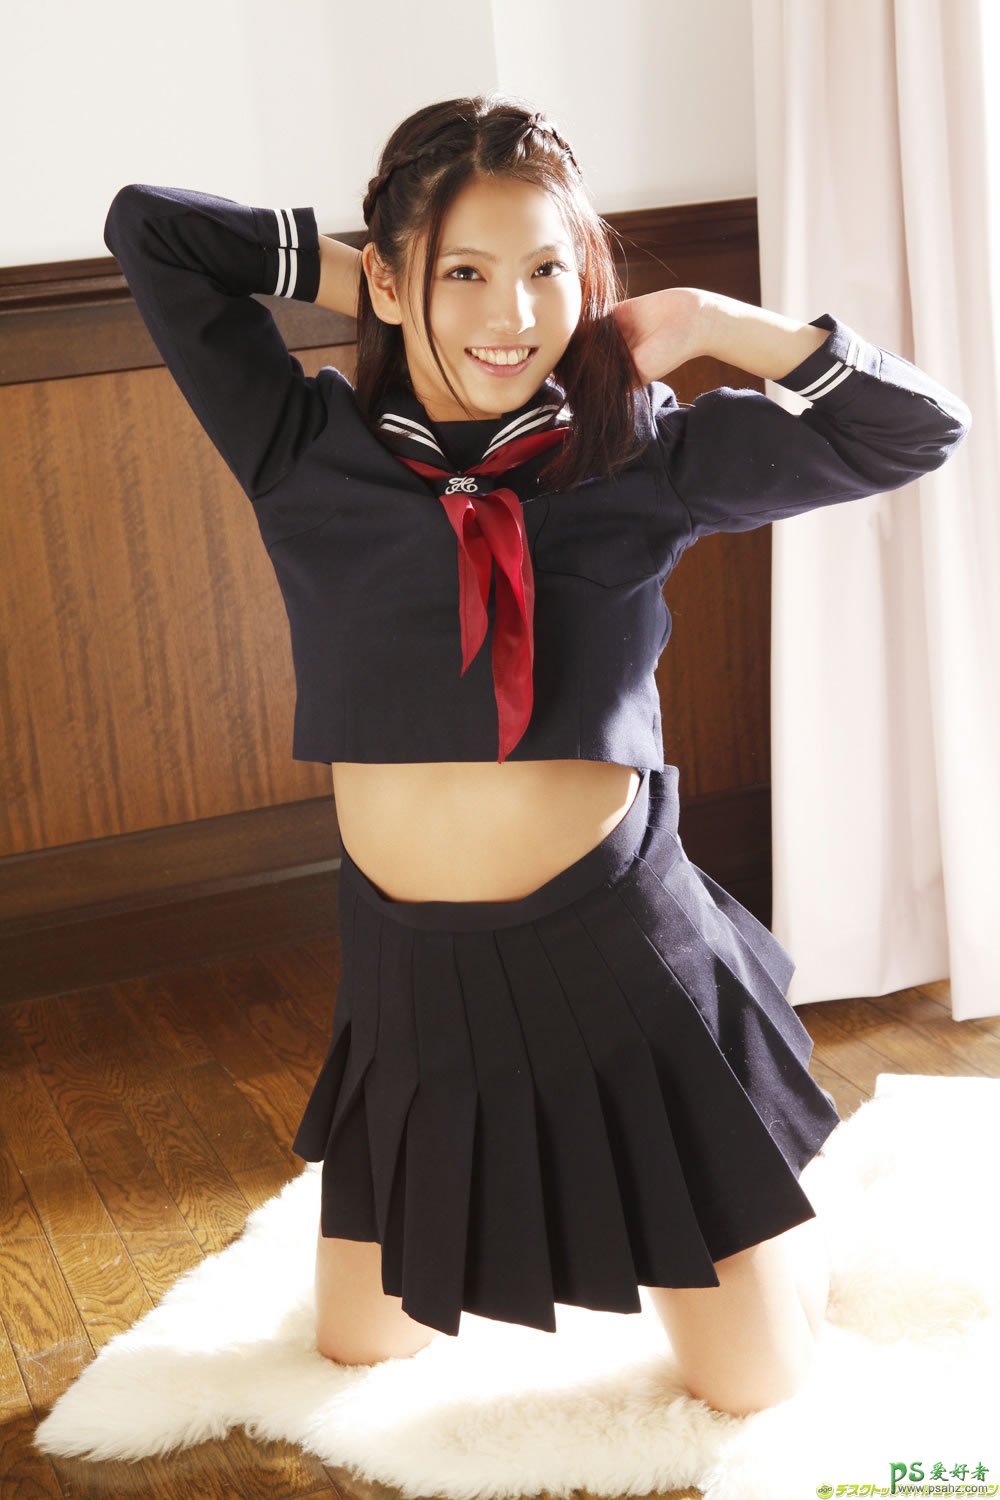 可爱的日本萝莉学生制服性感写真，漂亮学生妹妹丰满翘臀美腿迷人